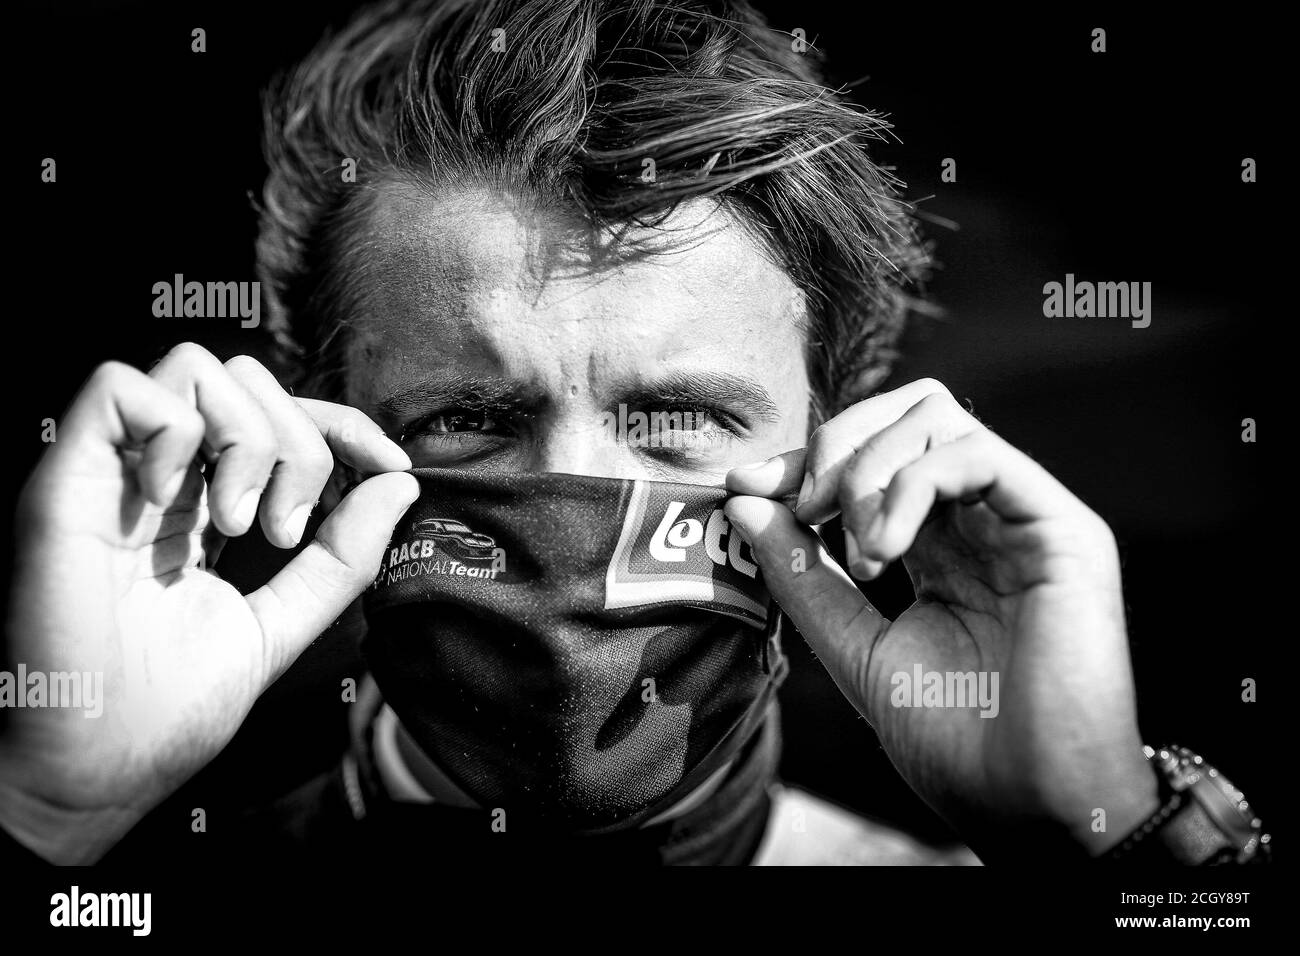 Magnus Gilles (bel), Comtoyou Racing, Audi LMS, Portrait während des FIA WTCR Race 2020 in Belgien, 1. Lauf des FIA World Touring Car Cup 2020, ON Stockfoto